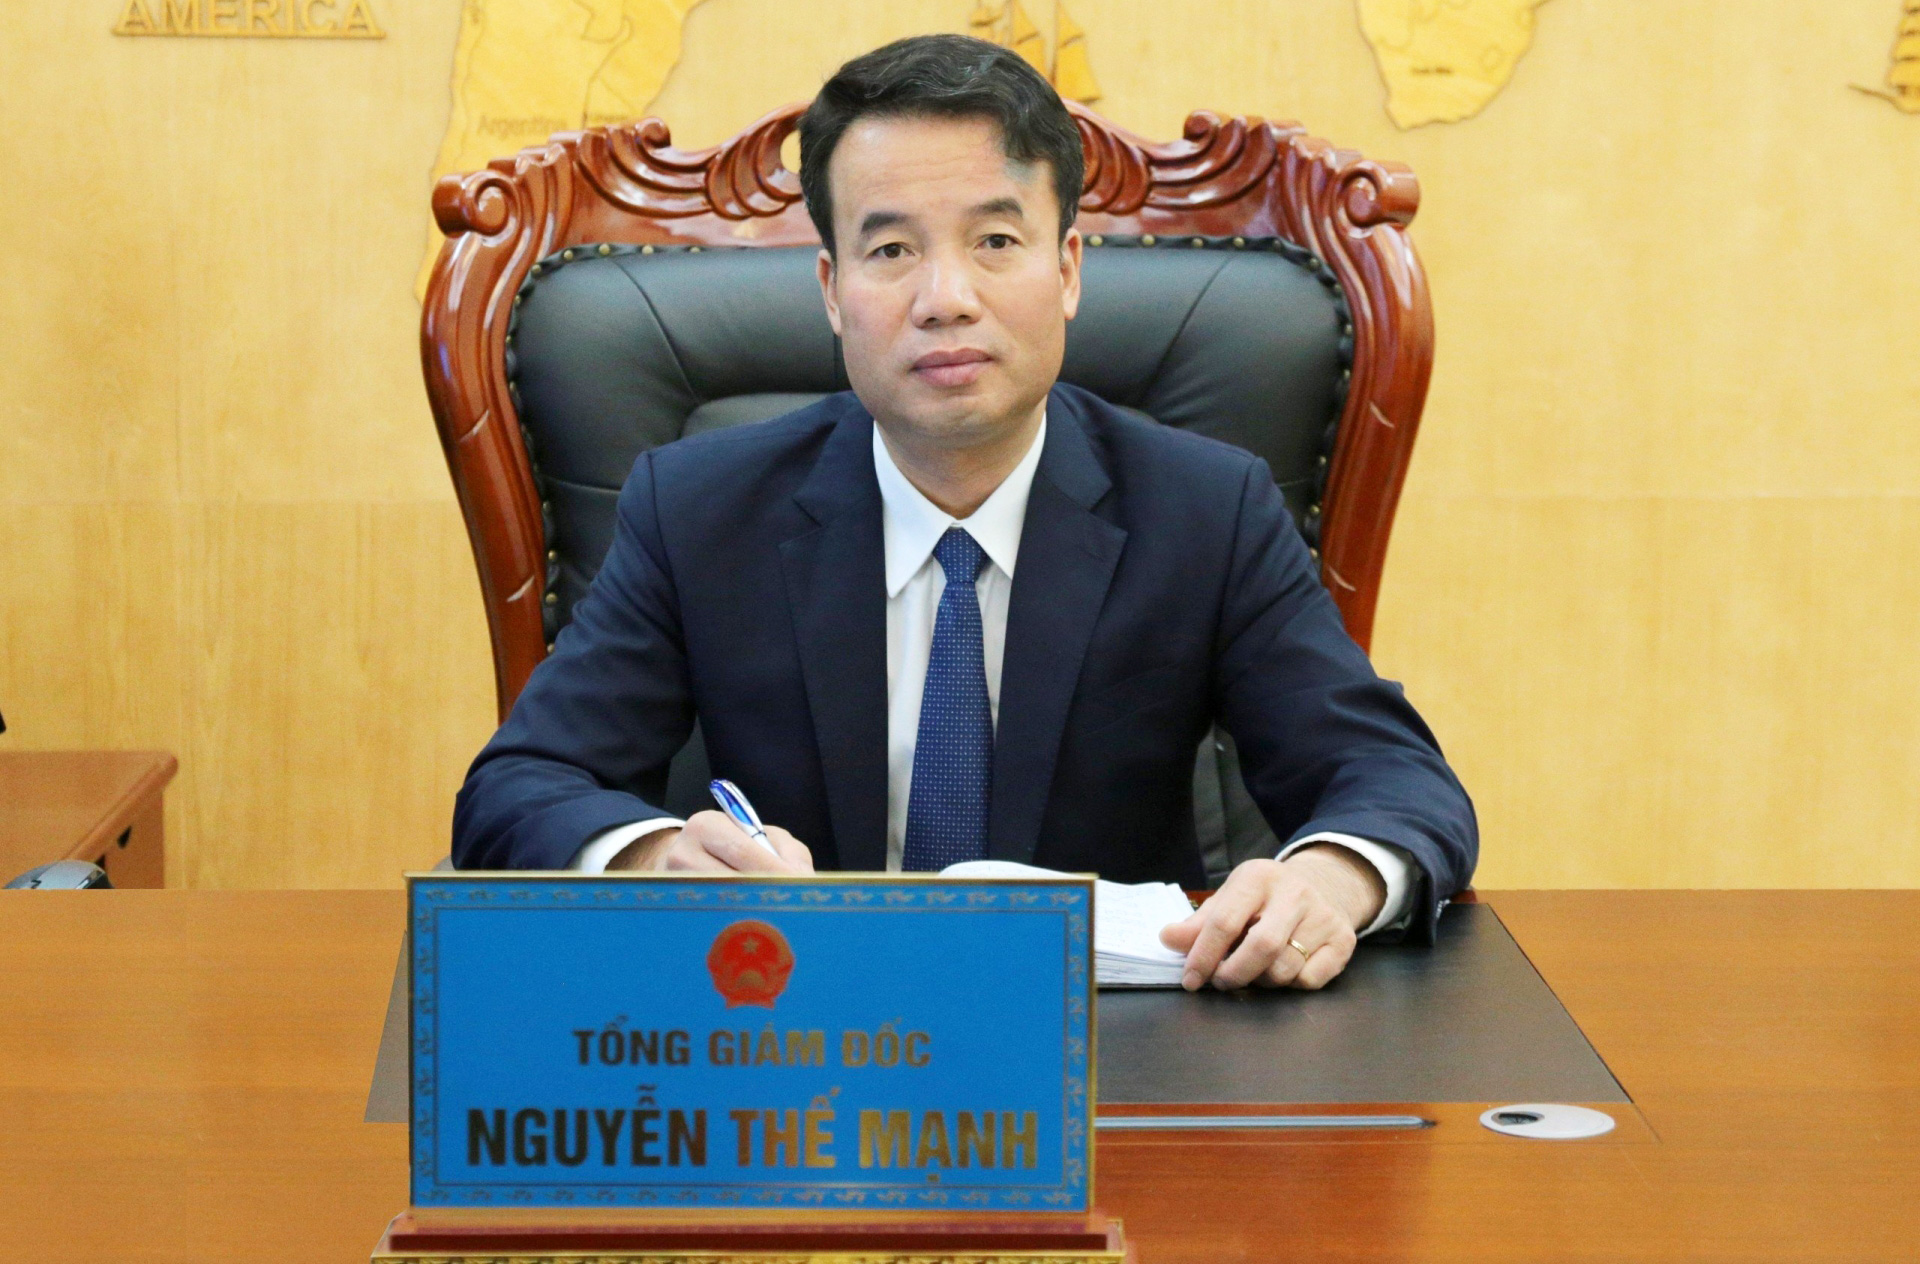 Tổng Giám đốc BHXH Việt Nam Nguyễn Thế Mạnh nhấn mạnh về công tác chuyển đổi số toàn diện trong toàn ngành